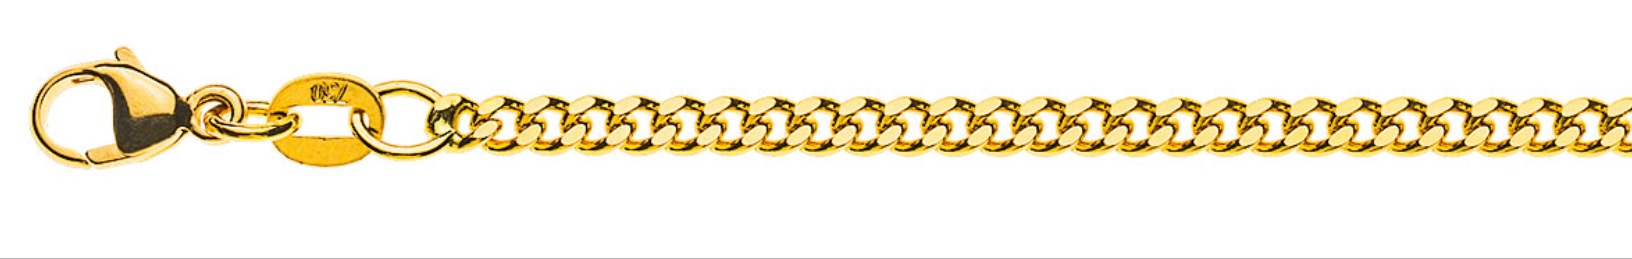 AURONOS Prestige Halskette Gelbgold 18K Panzerkette geschliffen 40cm 2.6mm